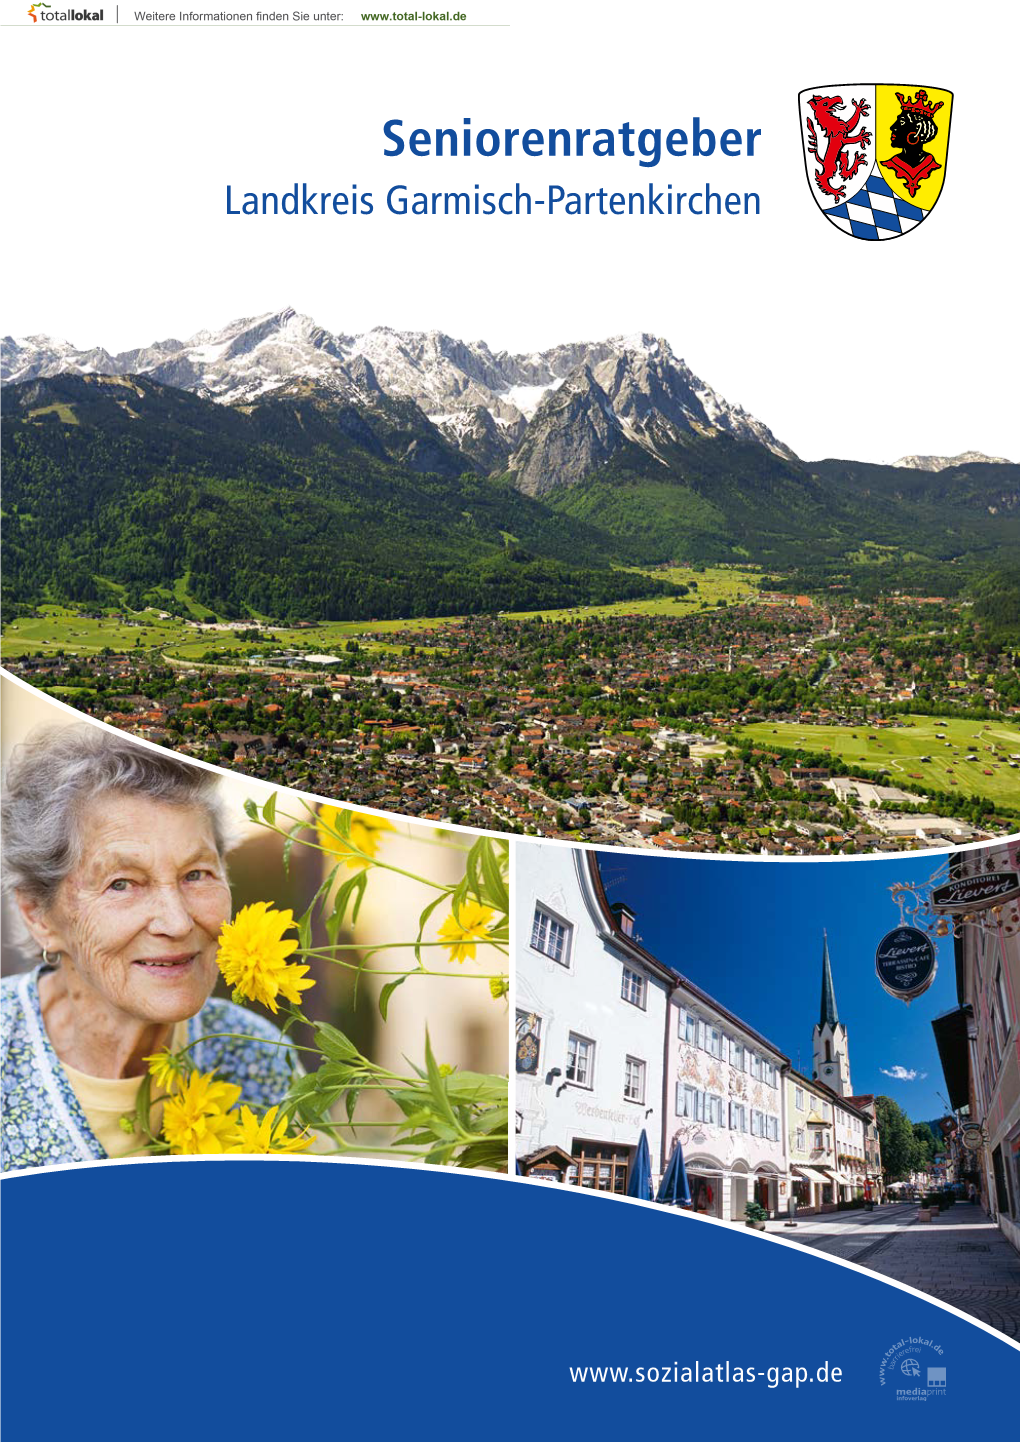 Seniorenratgeber Landkreis Garmisch-Partenkirchen